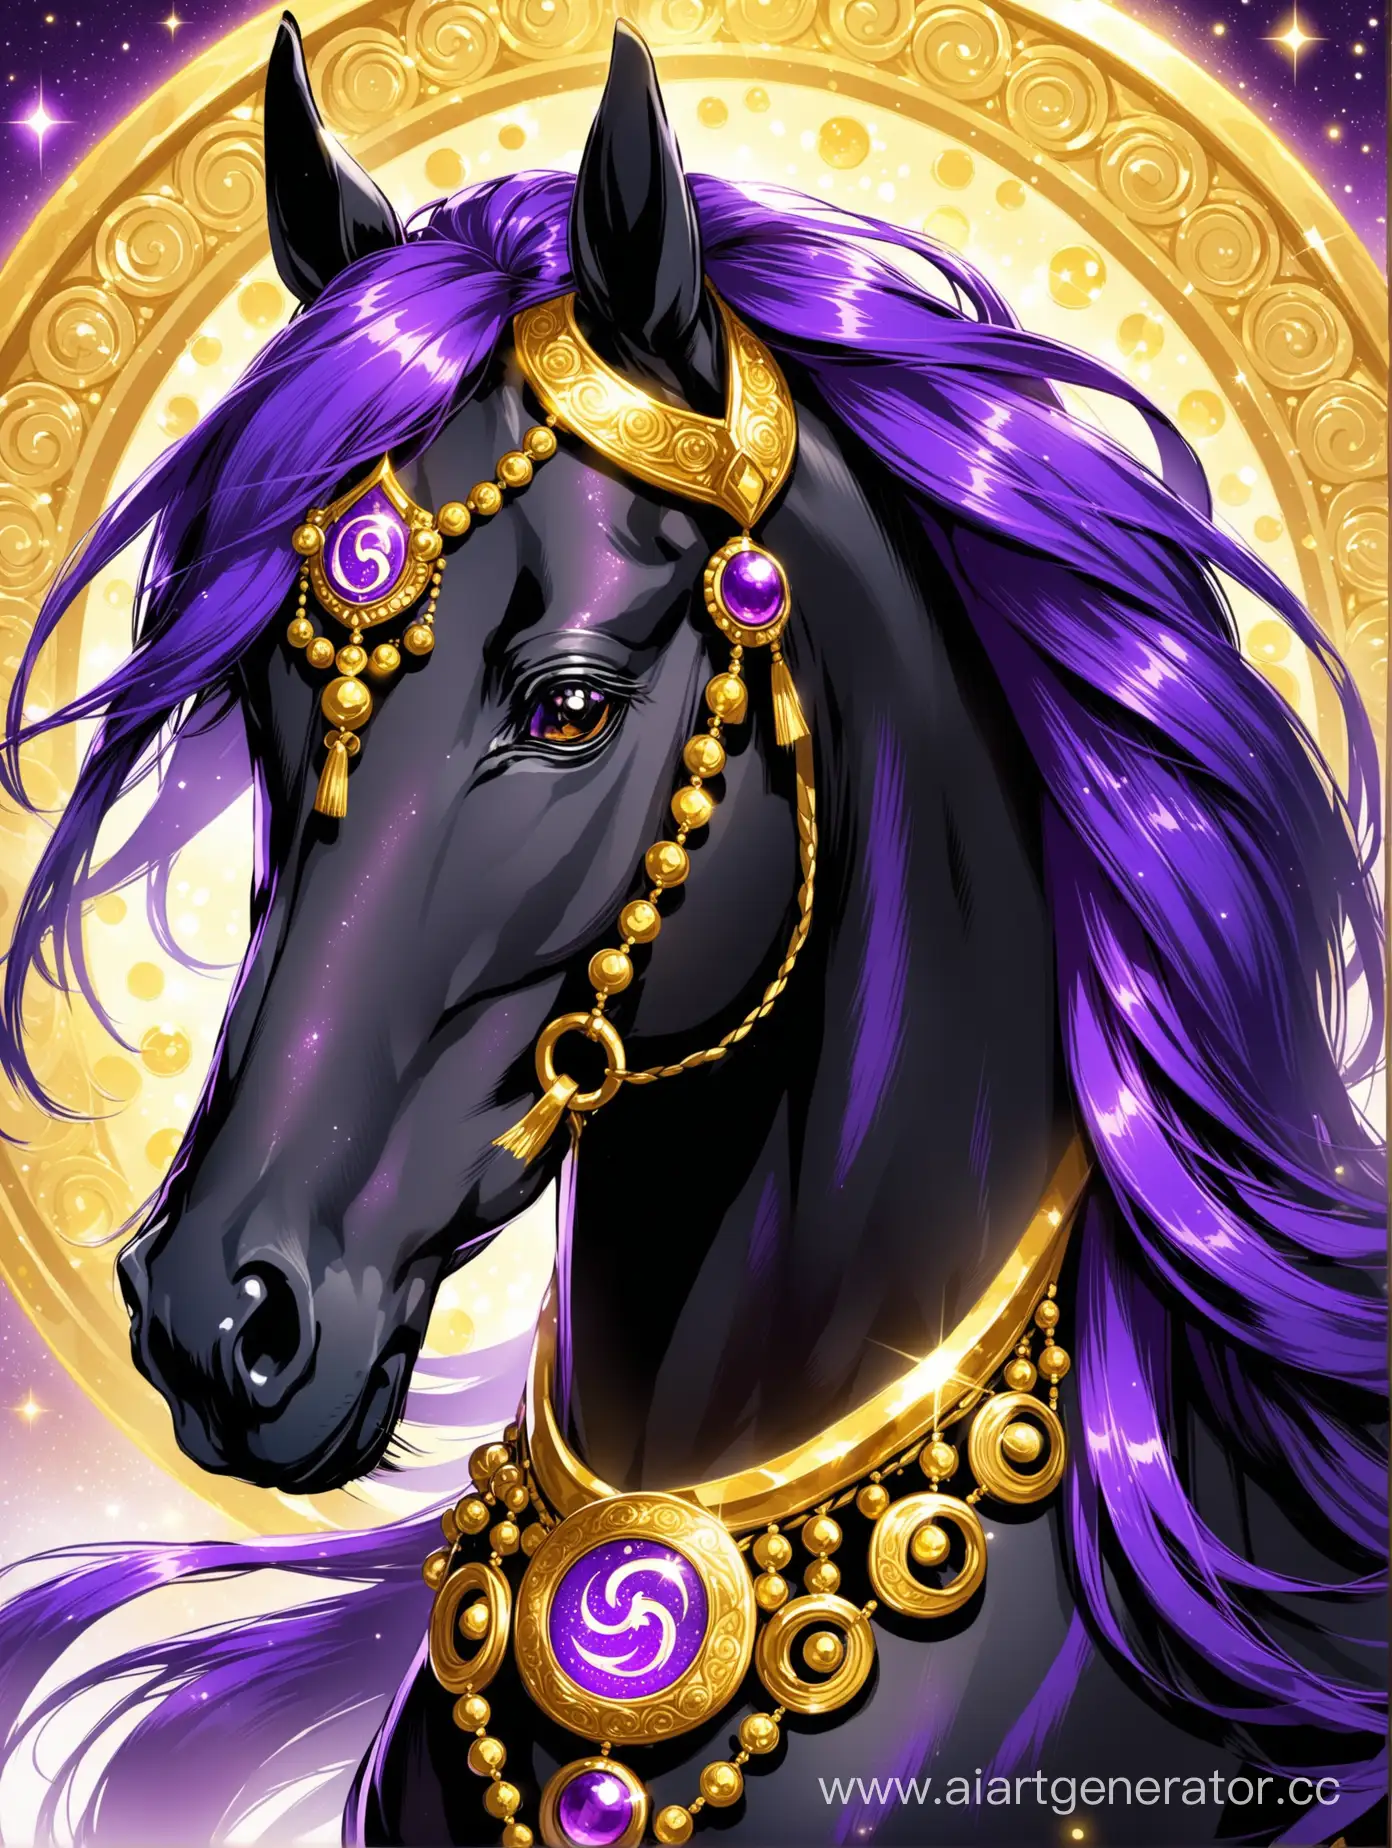 Черный конь с сияющей фиолетовой гривой. Весь в золотых украшениях и с фиолетовым символом на лбу